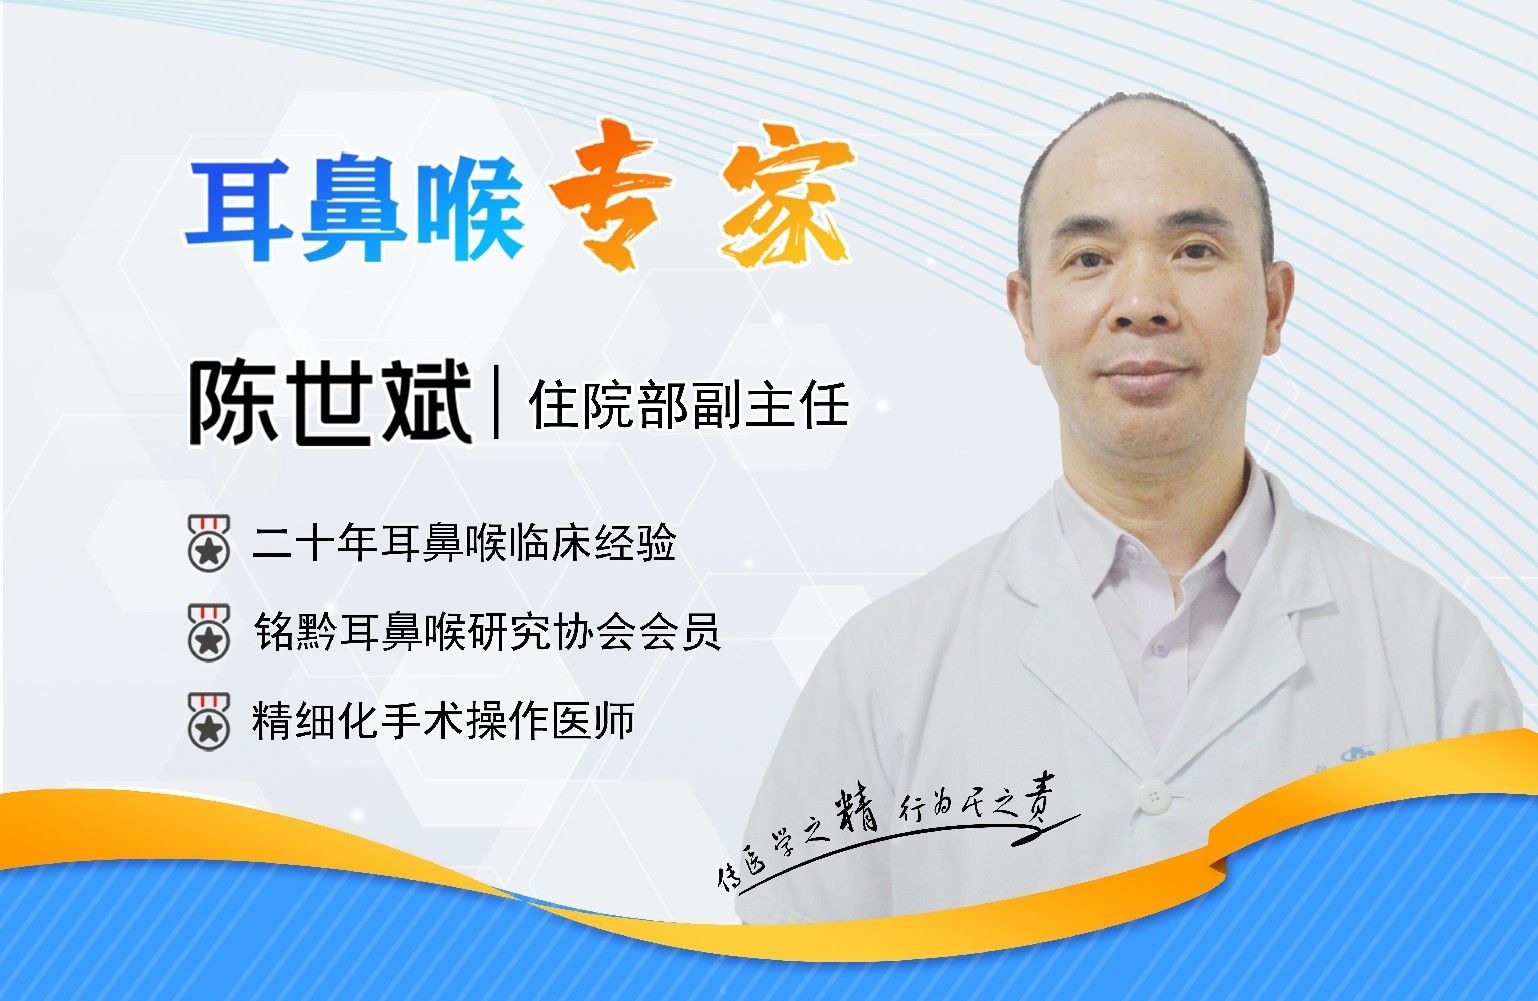 四、贵阳铭仁耳鼻喉医院陈世斌主任    专注自我提升，累积诊疗技术(图1)